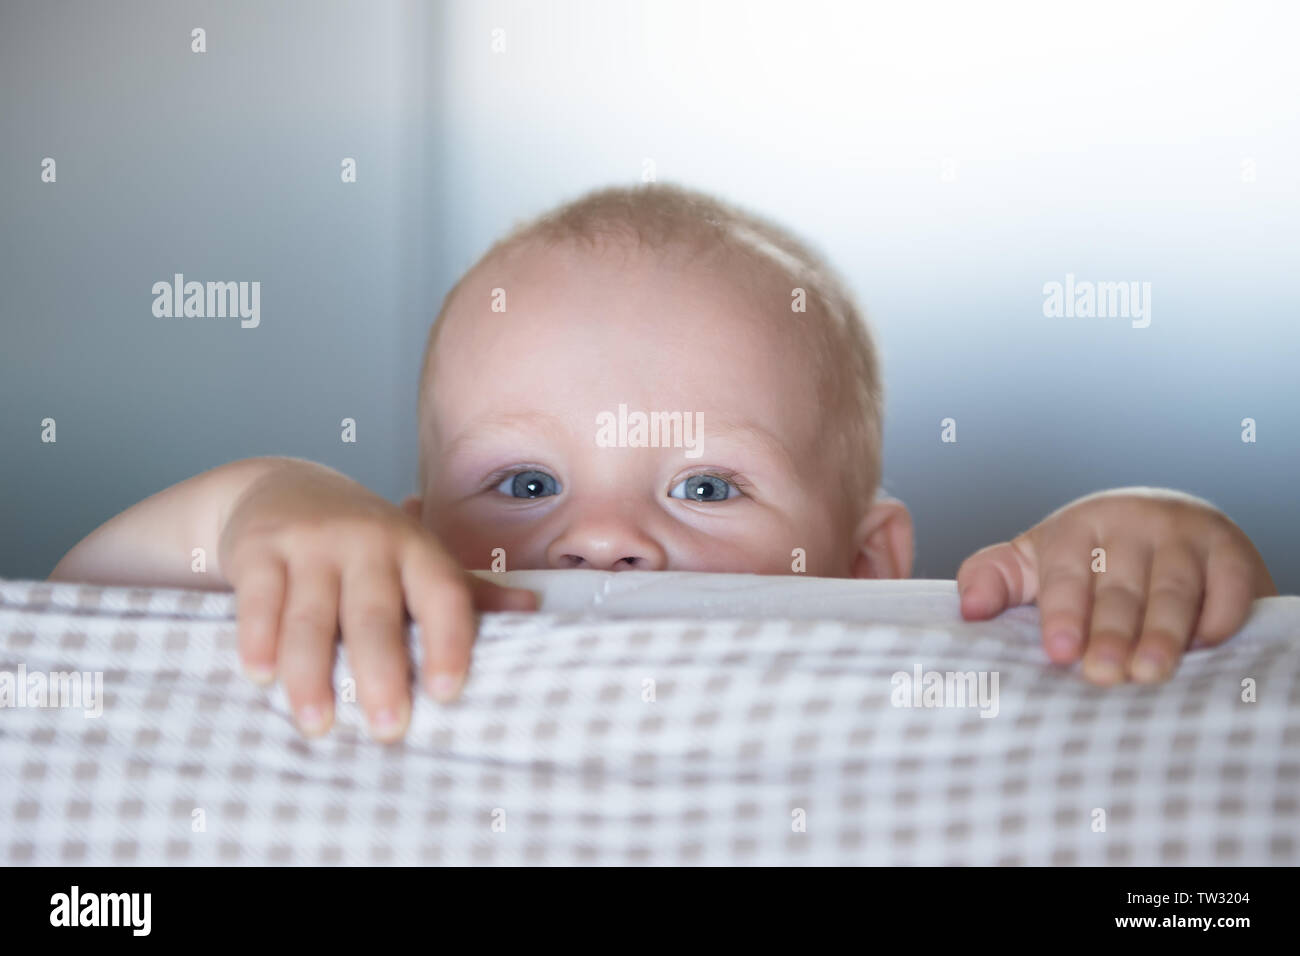 Wenig toddler Boy Spielen auf dem Bett. Cute kid lächelnd und versteckt sich unter der Abdeckung. Palyful und schelmischen Augen. Verstecken. Kinder Spaß verscherzen Stockfoto